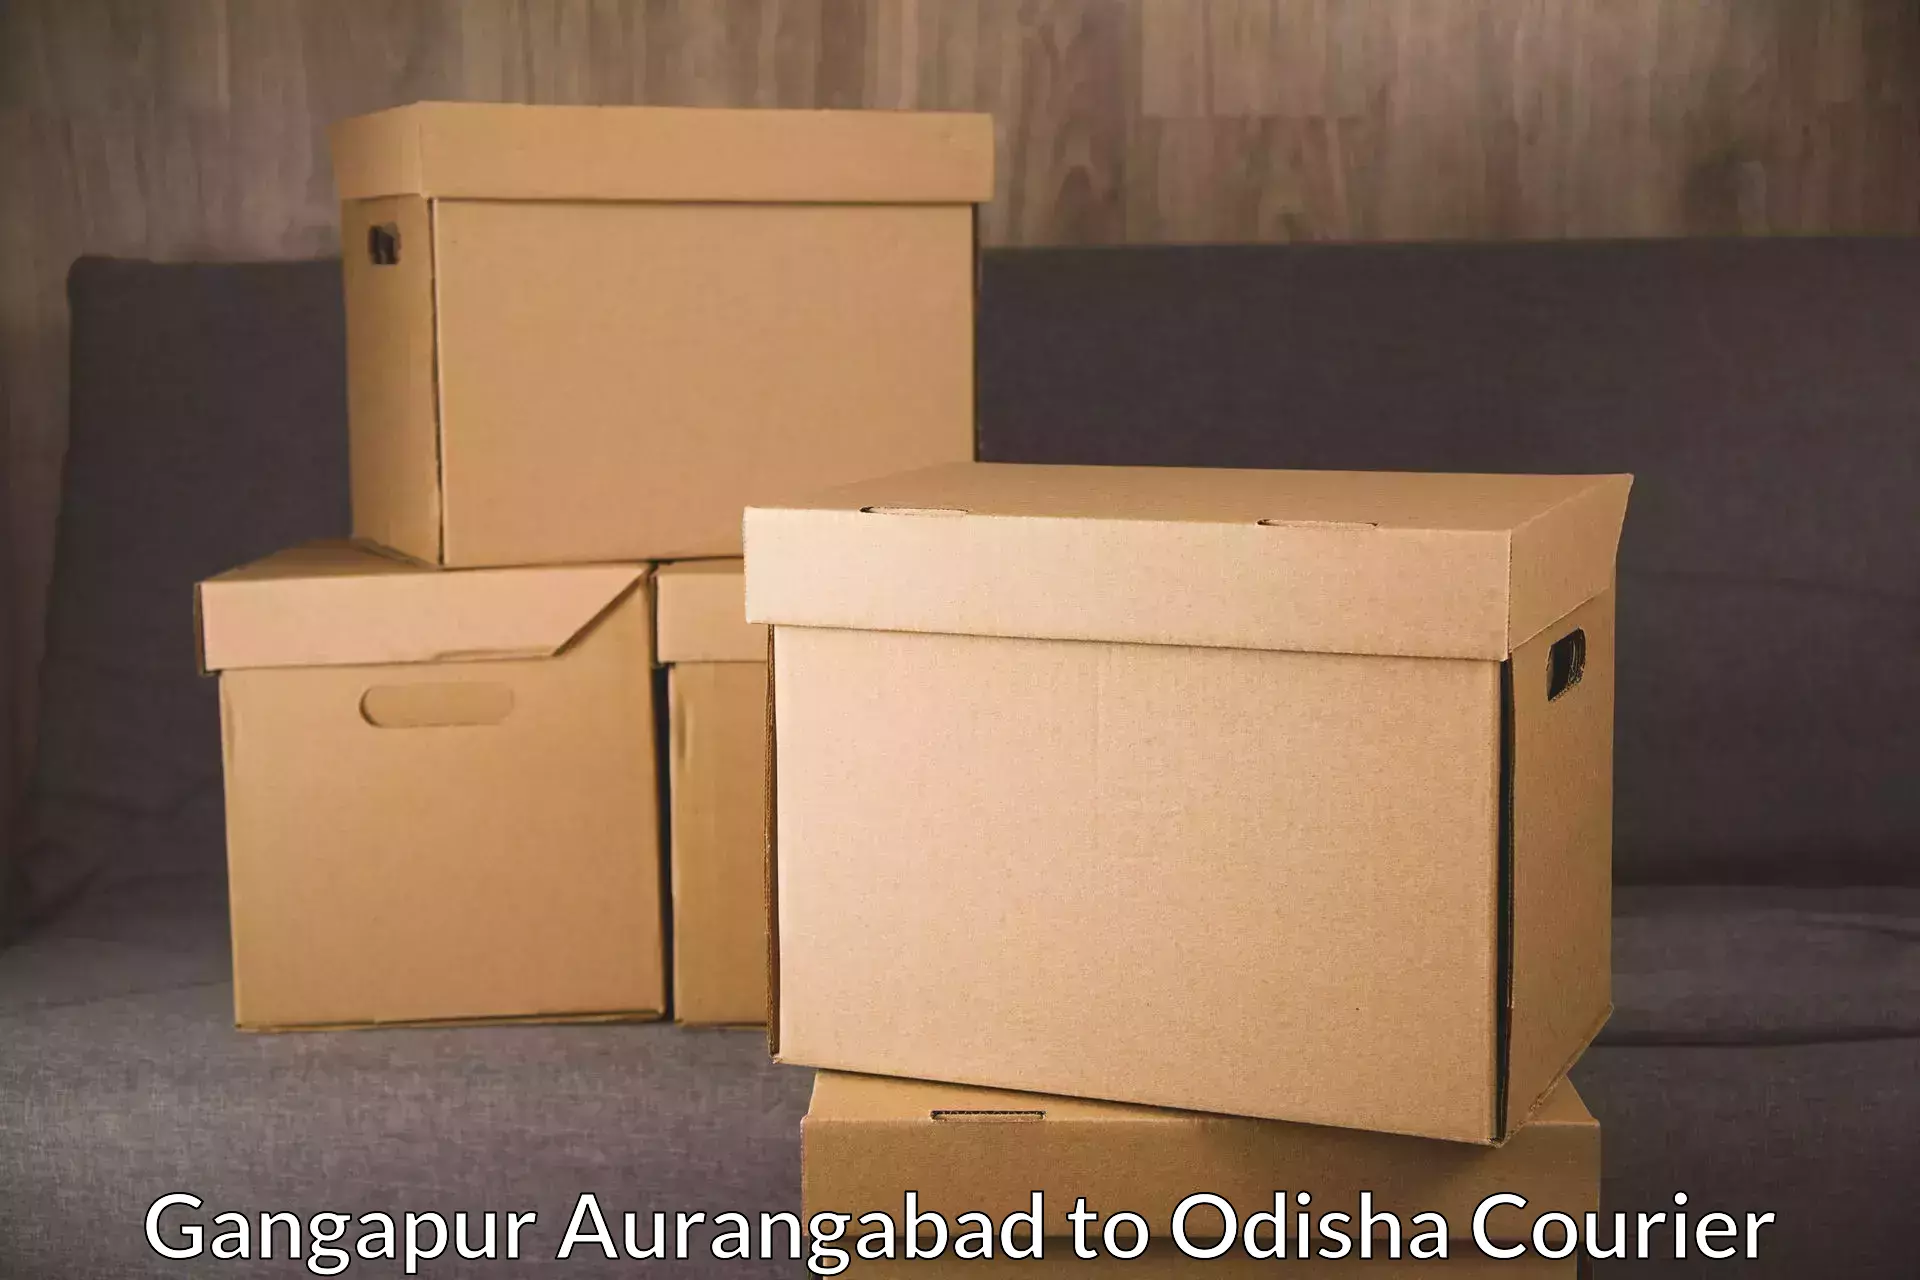 Efficient cargo services Gangapur Aurangabad to Tihidi